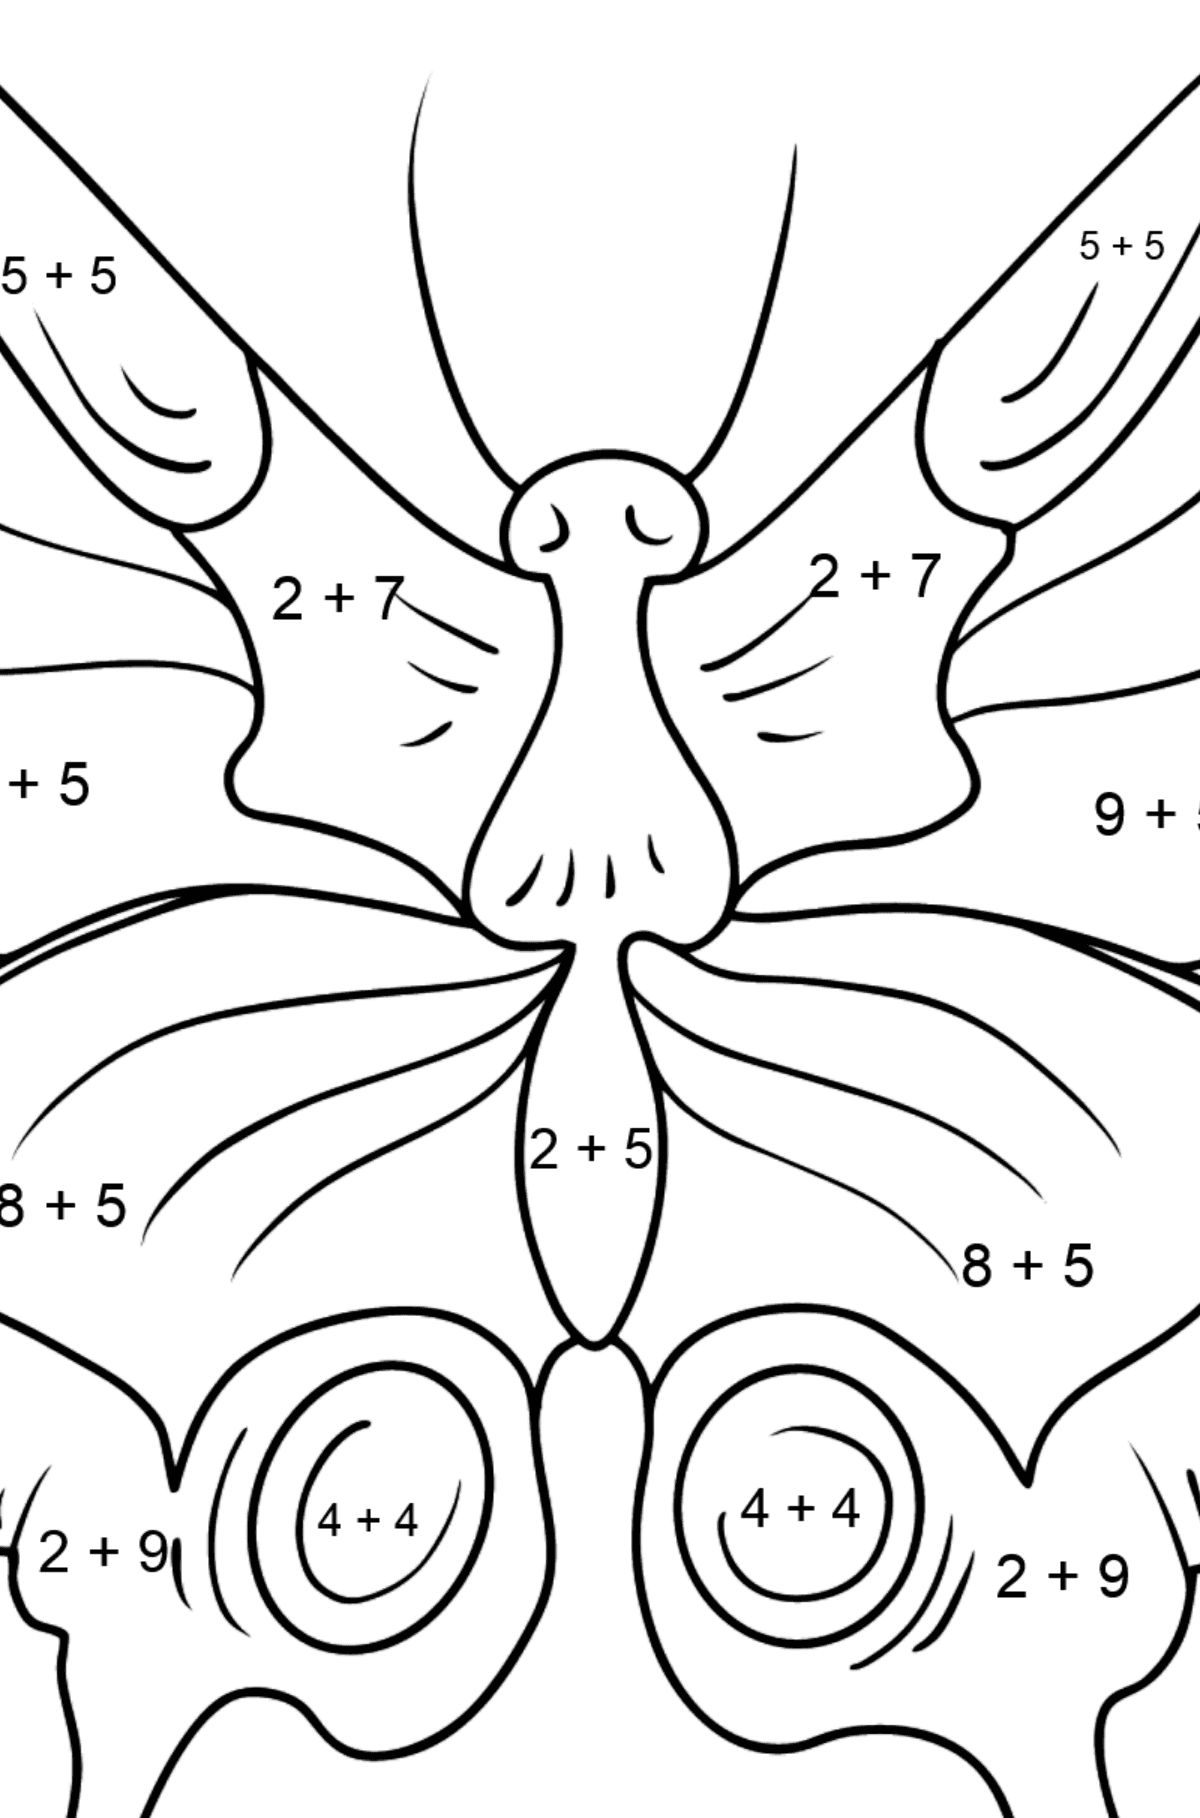 Omalovánka motýl otakárek - Matematická Omalovánka - Sčítání pro děti